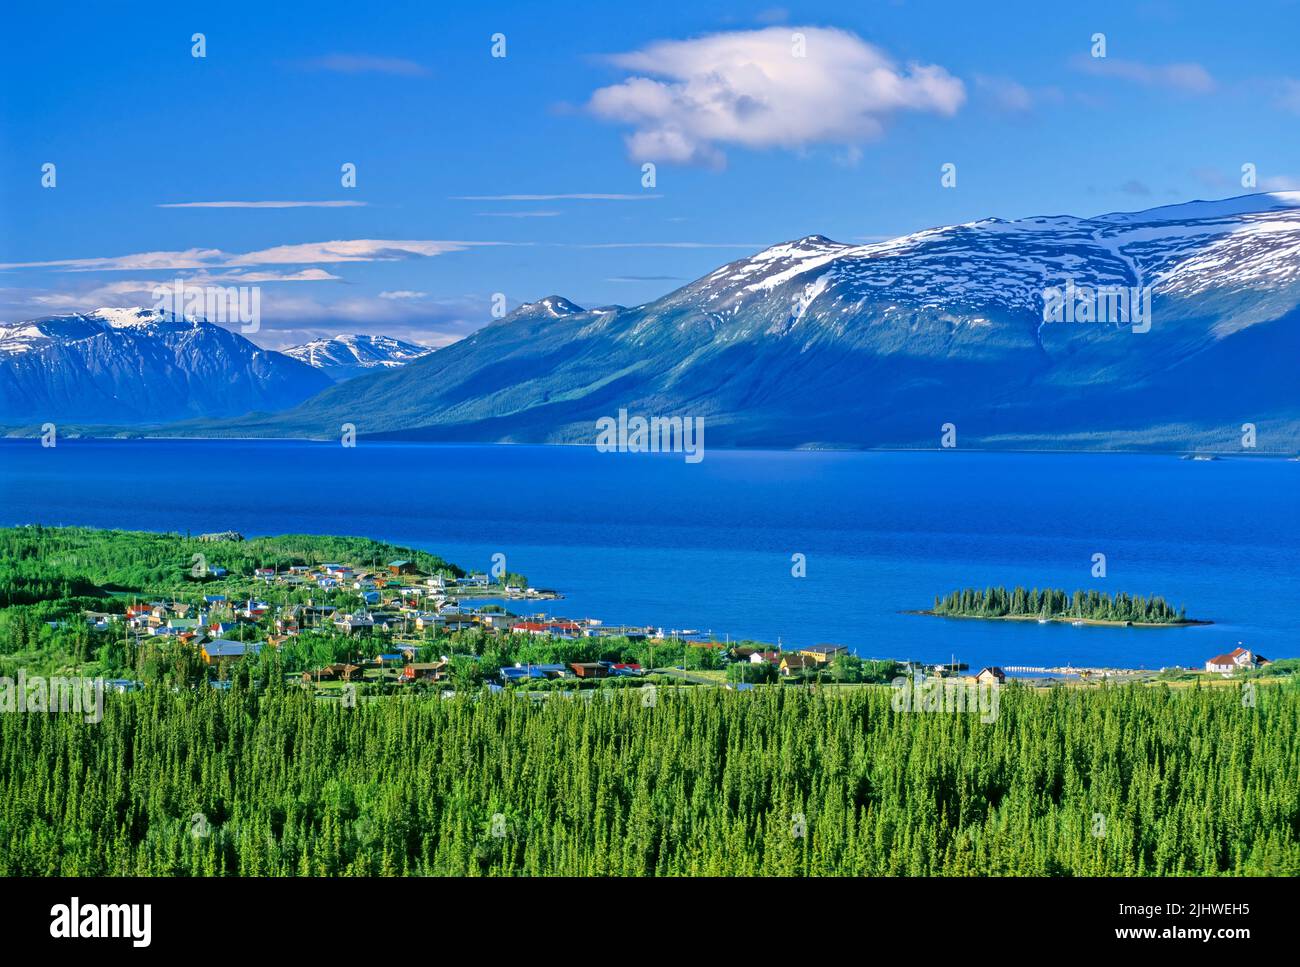 Ein landeindlicher Blick auf die kleine Stadt Atlin, die am Ufer des Atlin Lake im Norden von British Columbia, Kanada, liegt. Stockfoto